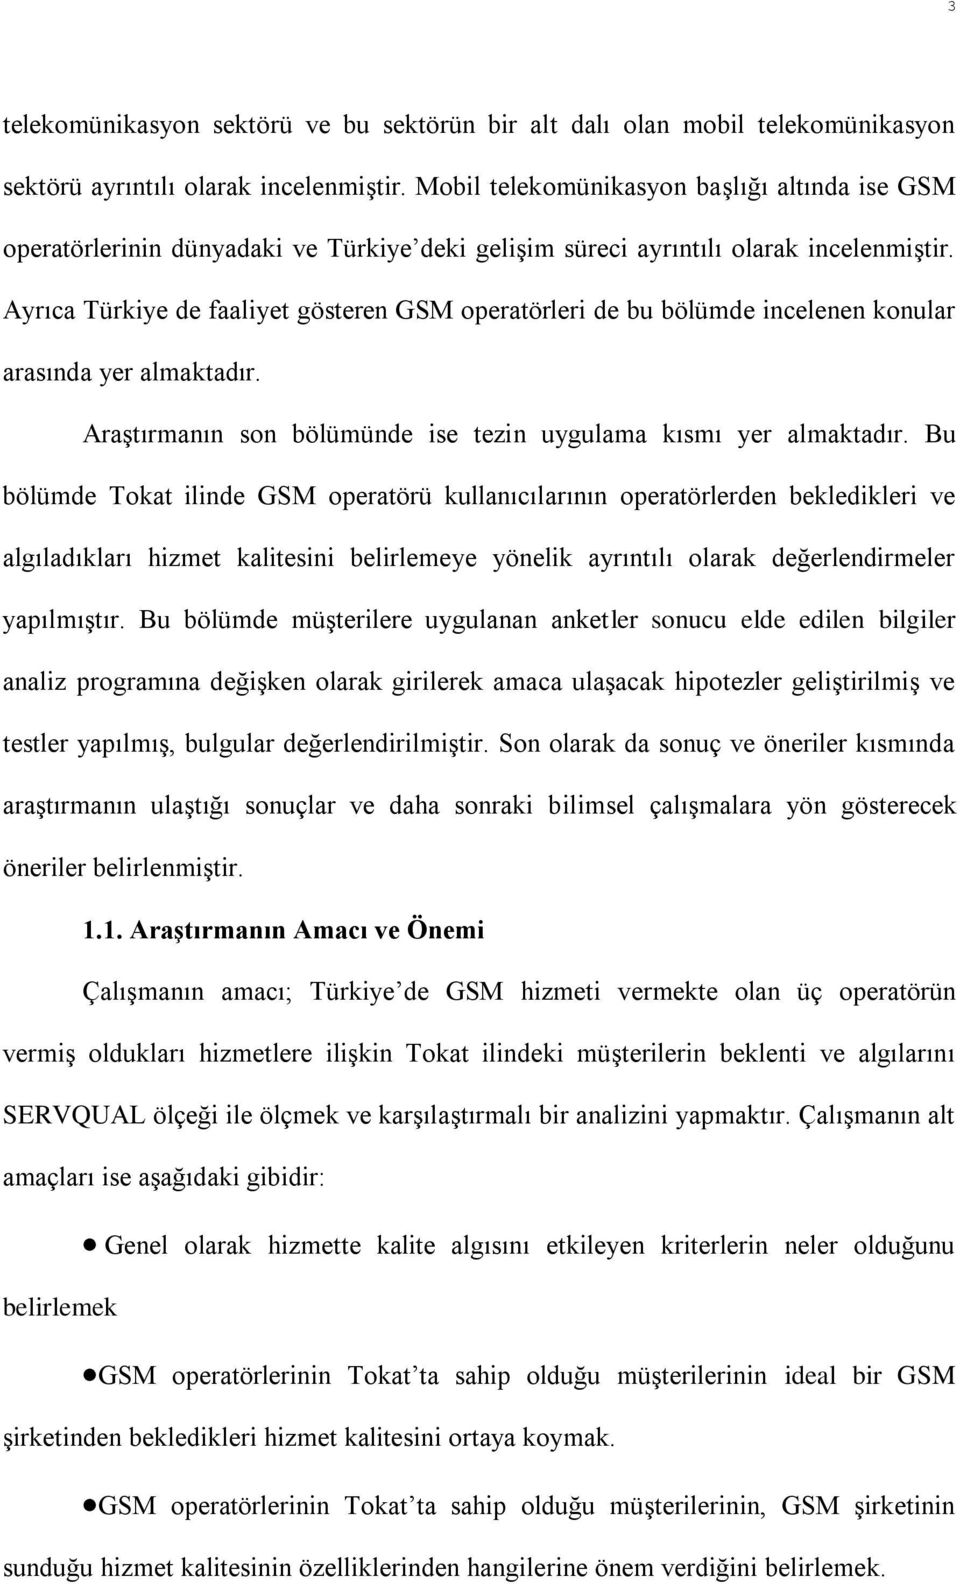 Ayrıca Türkiye de faaliyet gösteren GSM operatörleri de bu bölümde incelenen konular arasında yer almaktadır. Araştırmanın son bölümünde ise tezin uygulama kısmı yer almaktadır.